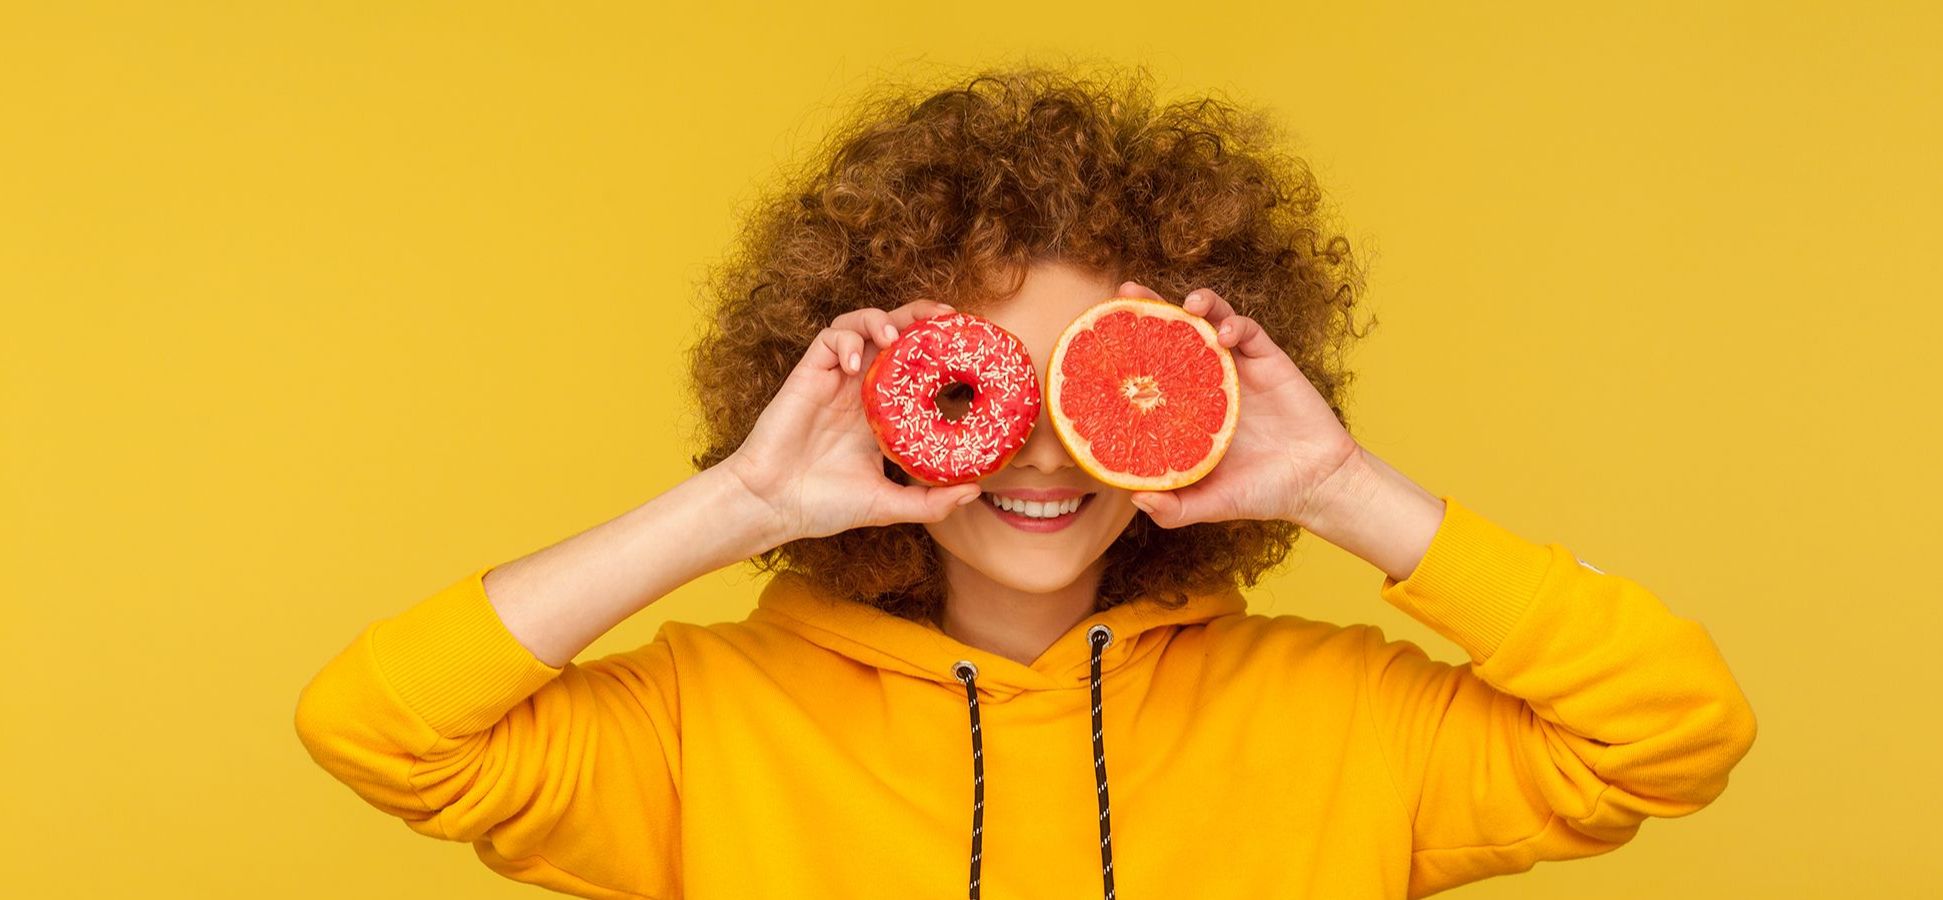 Frau, die einen Donut und eine halbe Orange vor ihre Augen hält